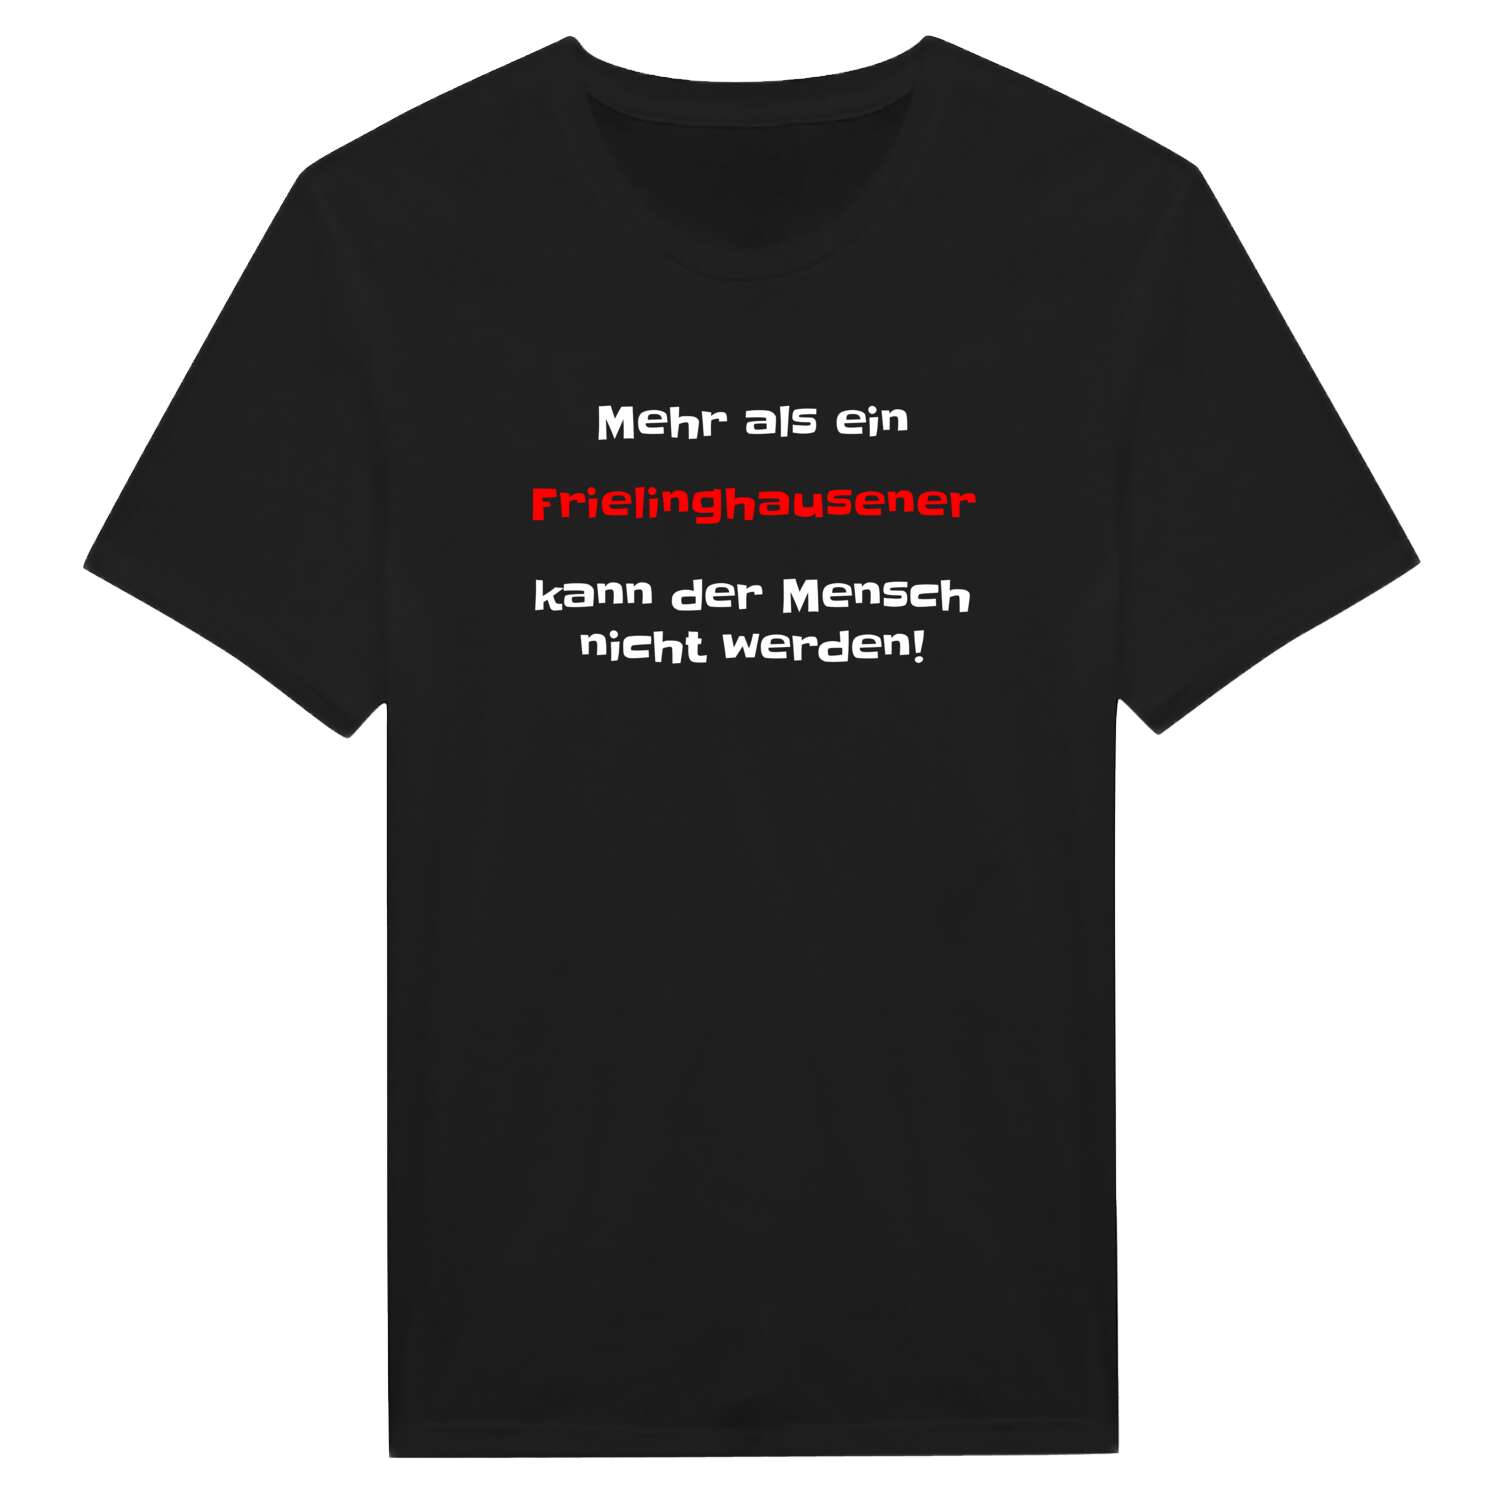 Frielinghausen T-Shirt »Mehr als ein«